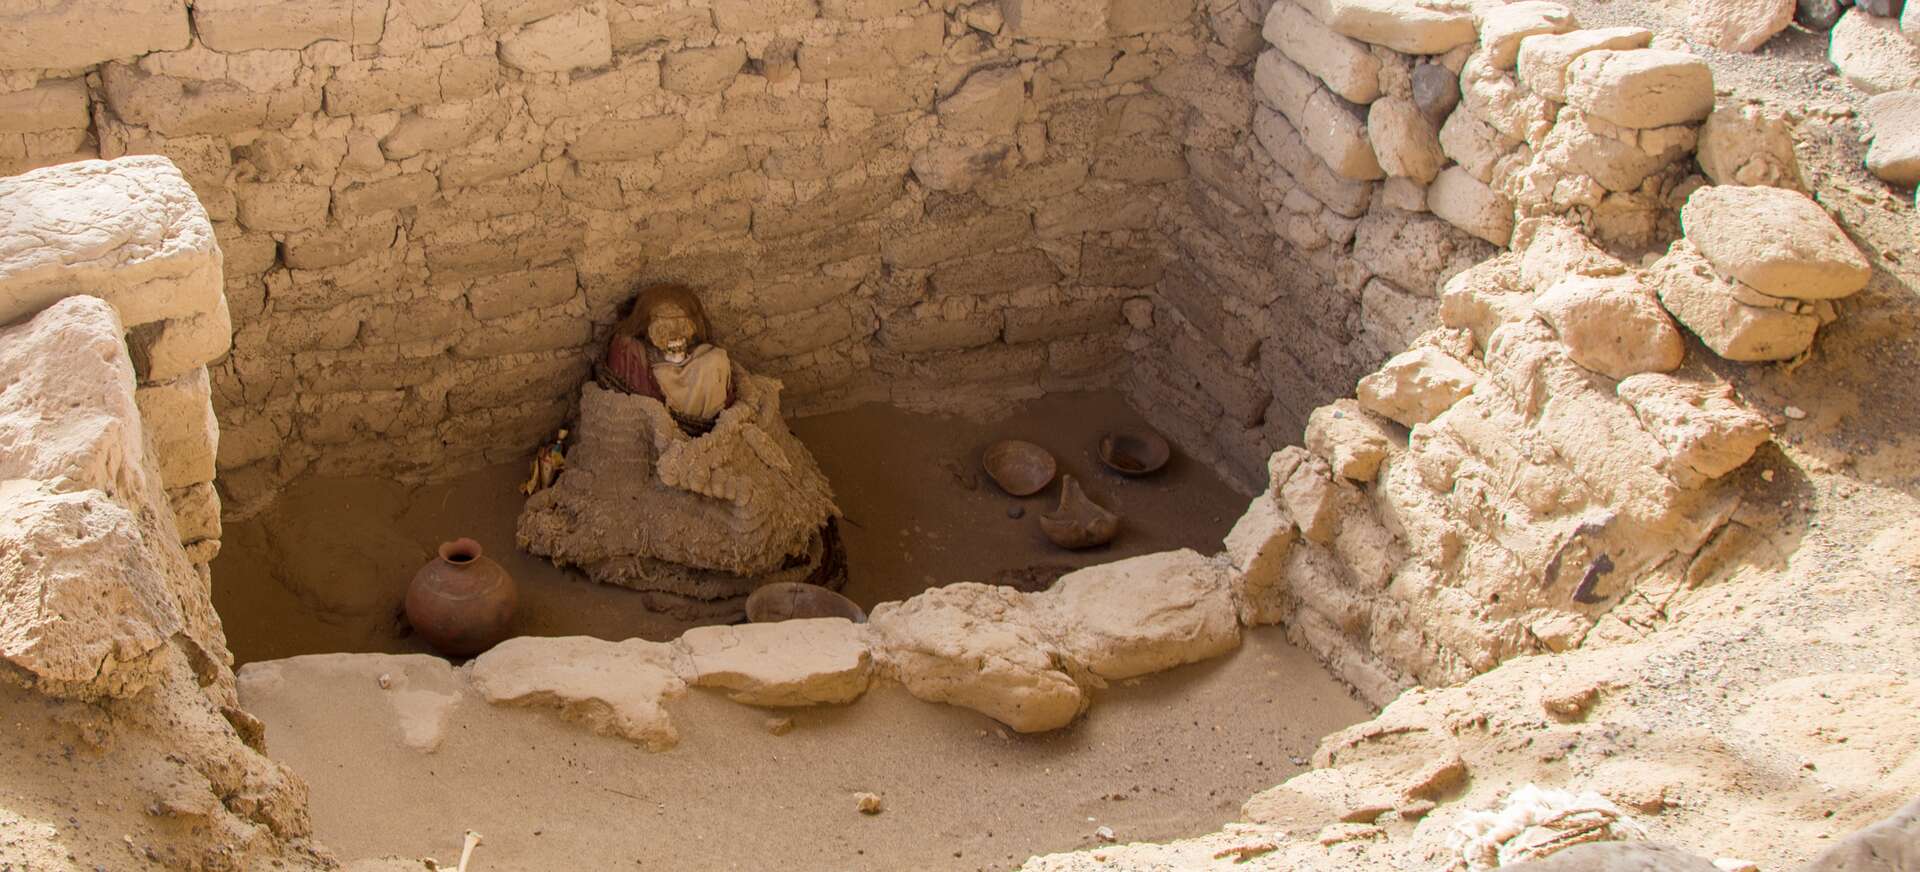 Una momia peluda en excelentes condiciones fue descubierta en un sitio en Perú